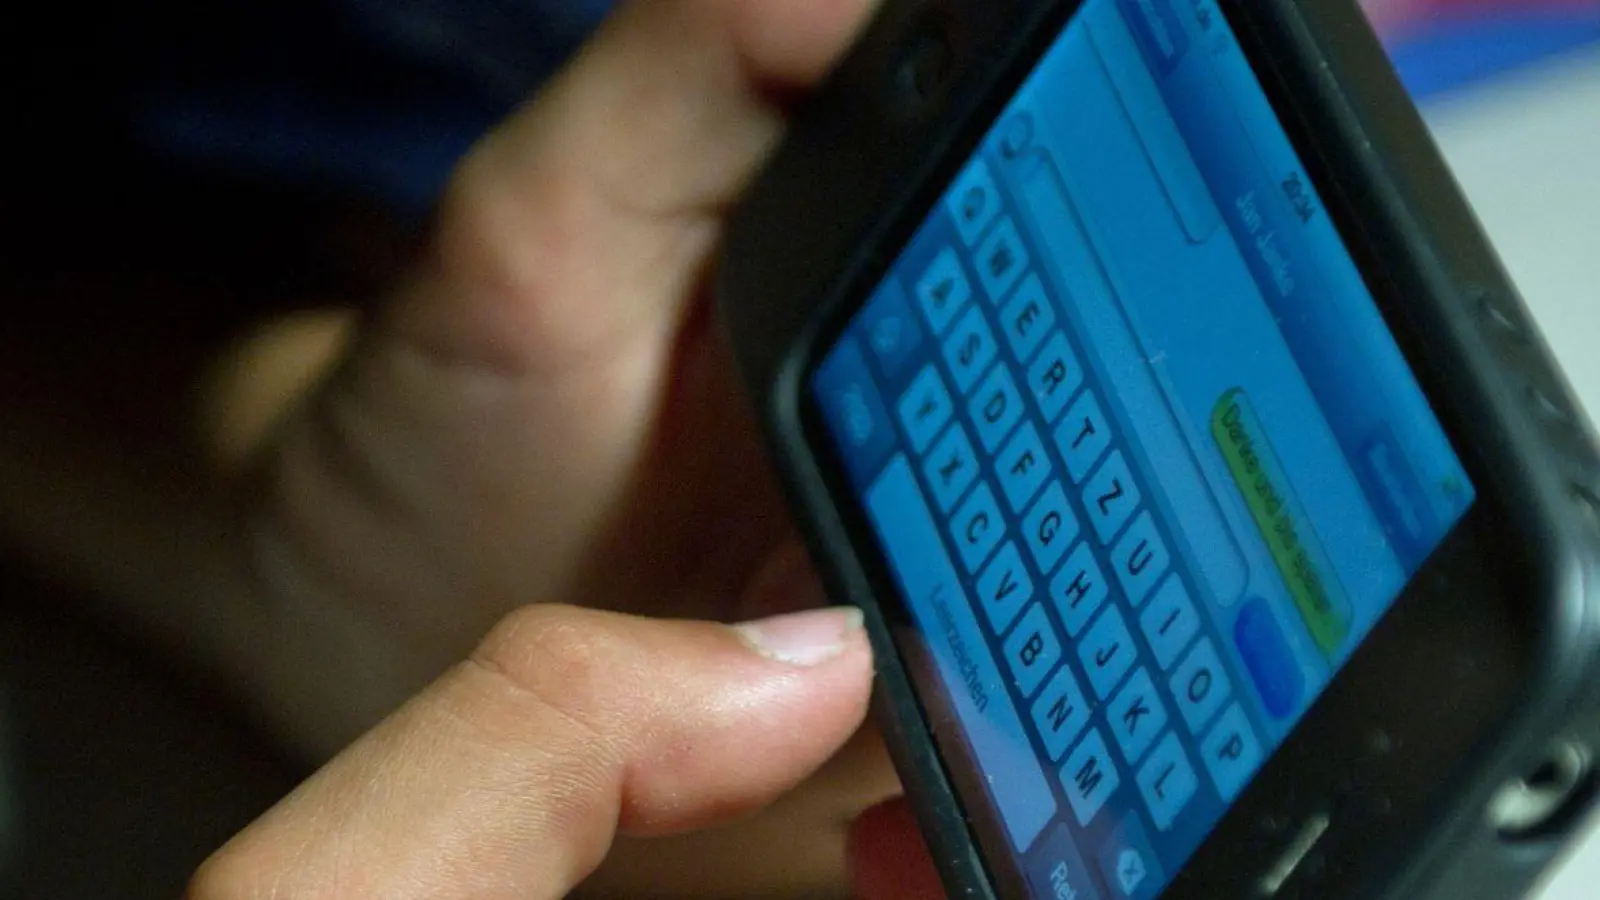 Ein elfjähriger Junge liegt unter der Bettdecke und schreibt auf einem Smartphone eine SMS. Kinder unter 13 Jahren sollten Experten zufolge keinen Zugang zu derartigen Medien haben. (Foto: Patrick Pleul/dpa)